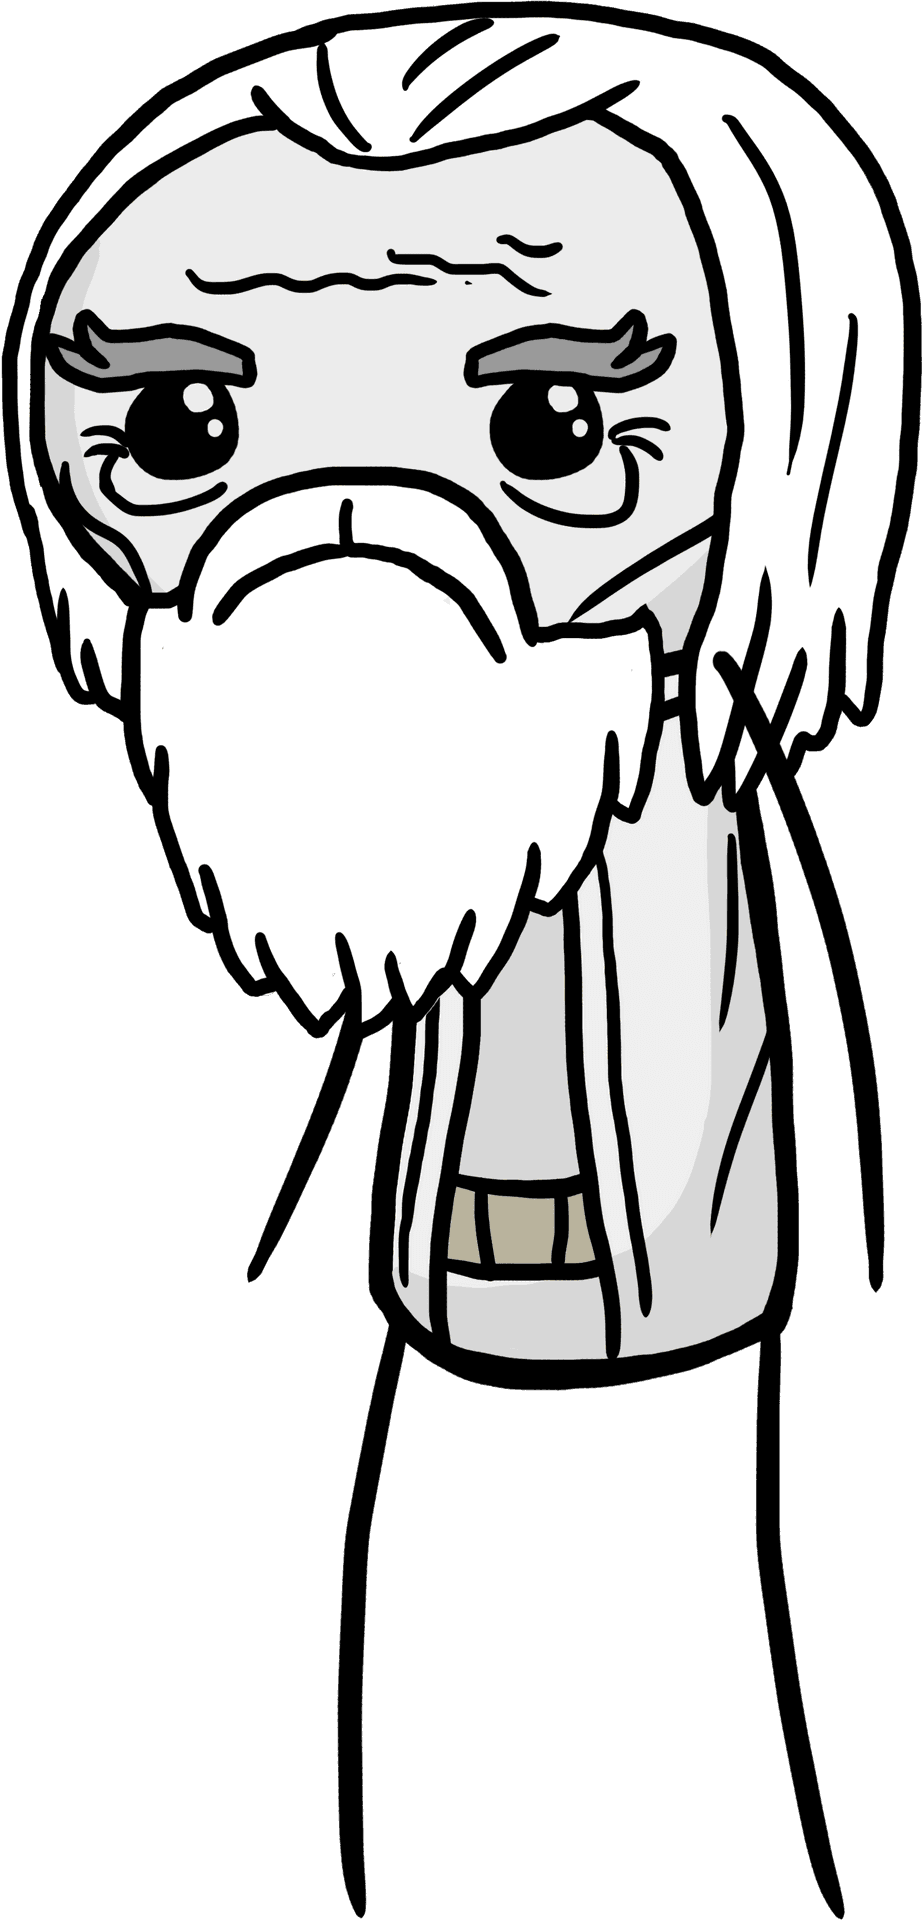 Cartoon Wizard Sad Expression.png PNG image